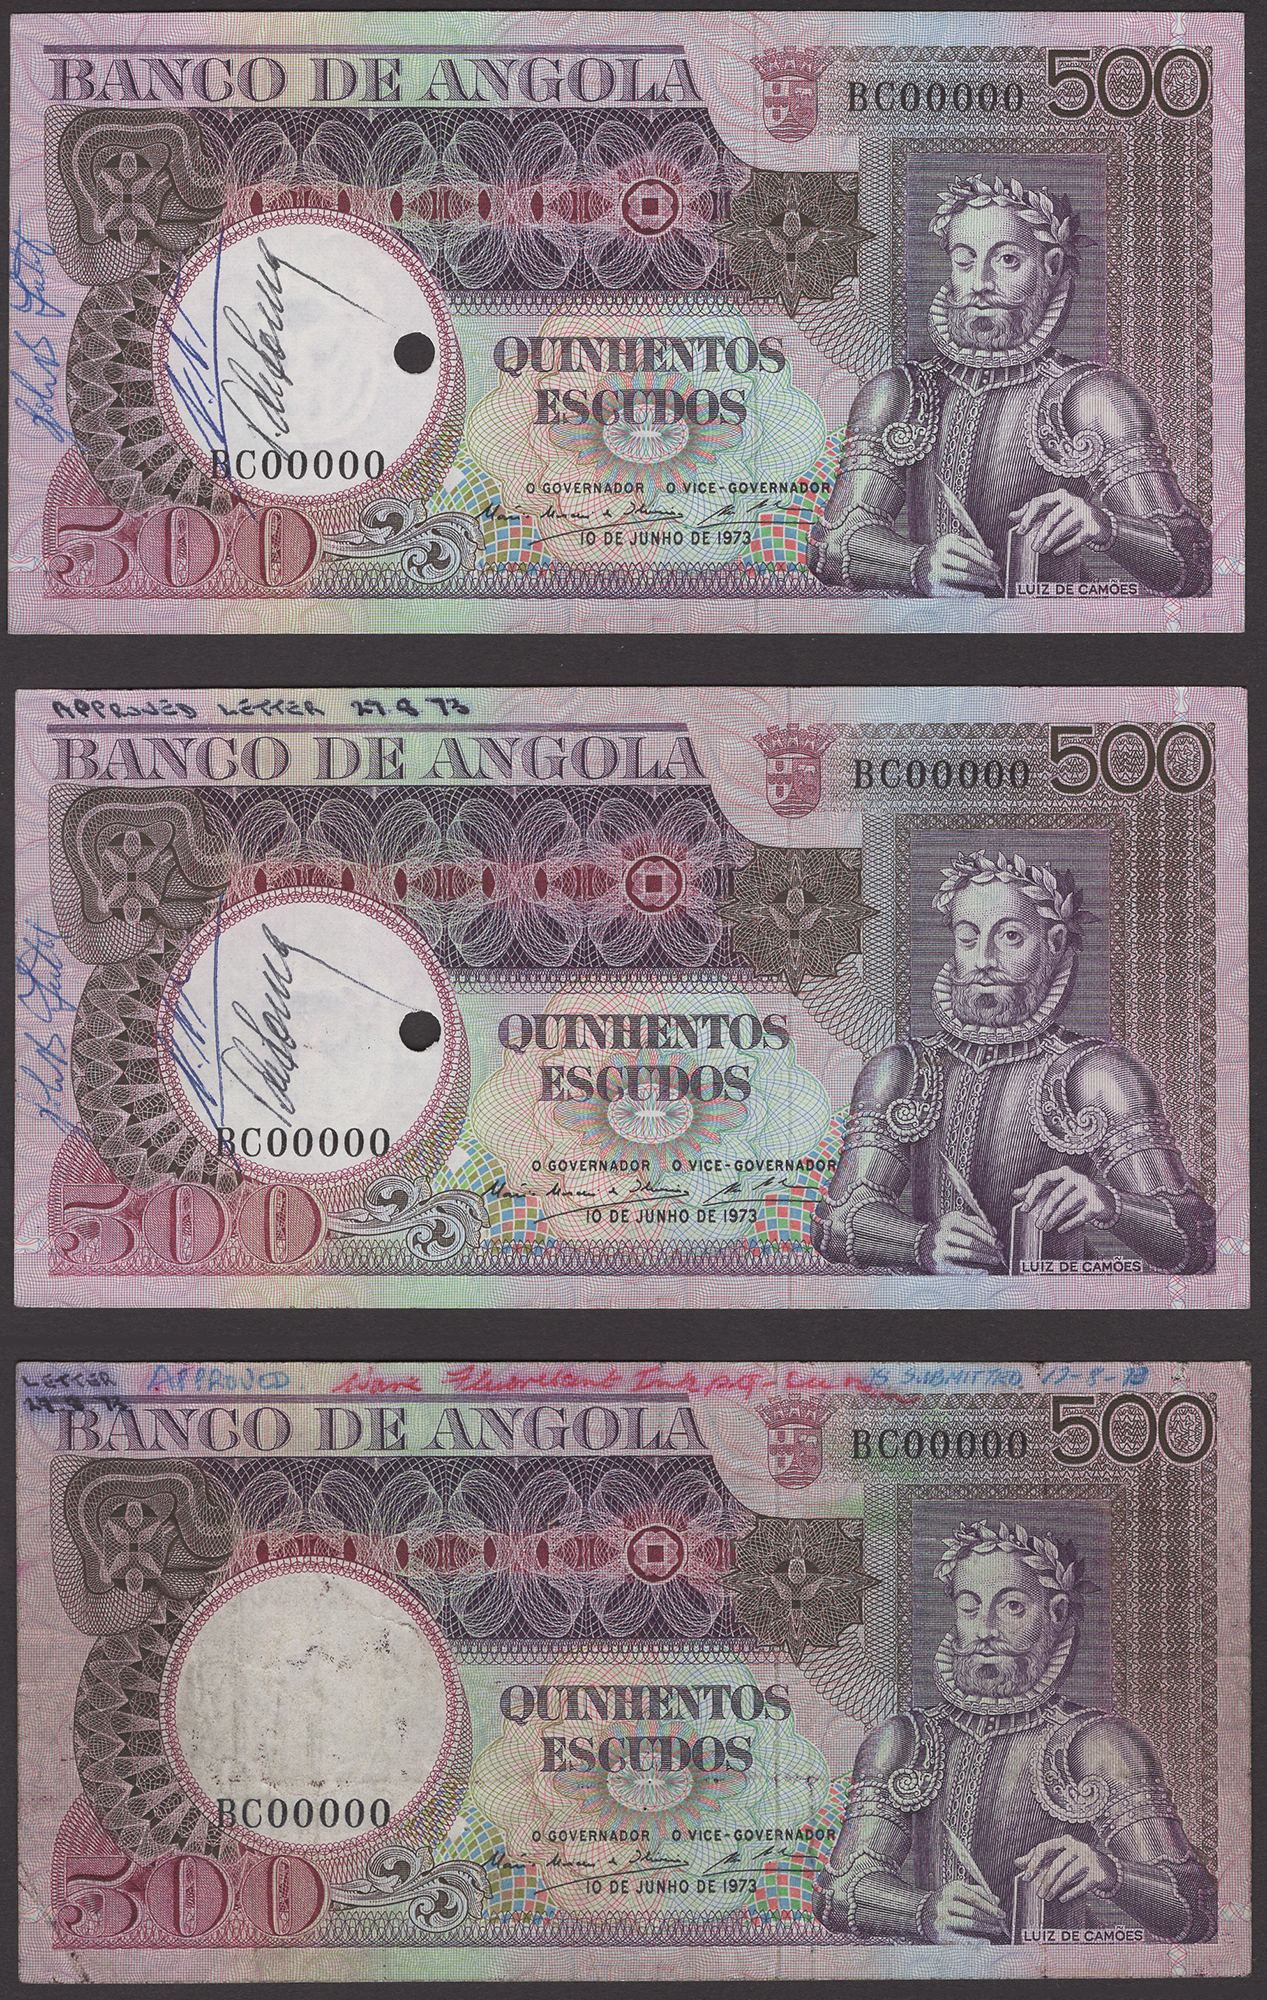 Banco de Angola, specimens for 500 Escudos (3), 10 June 1973, serial number BC00000, first...